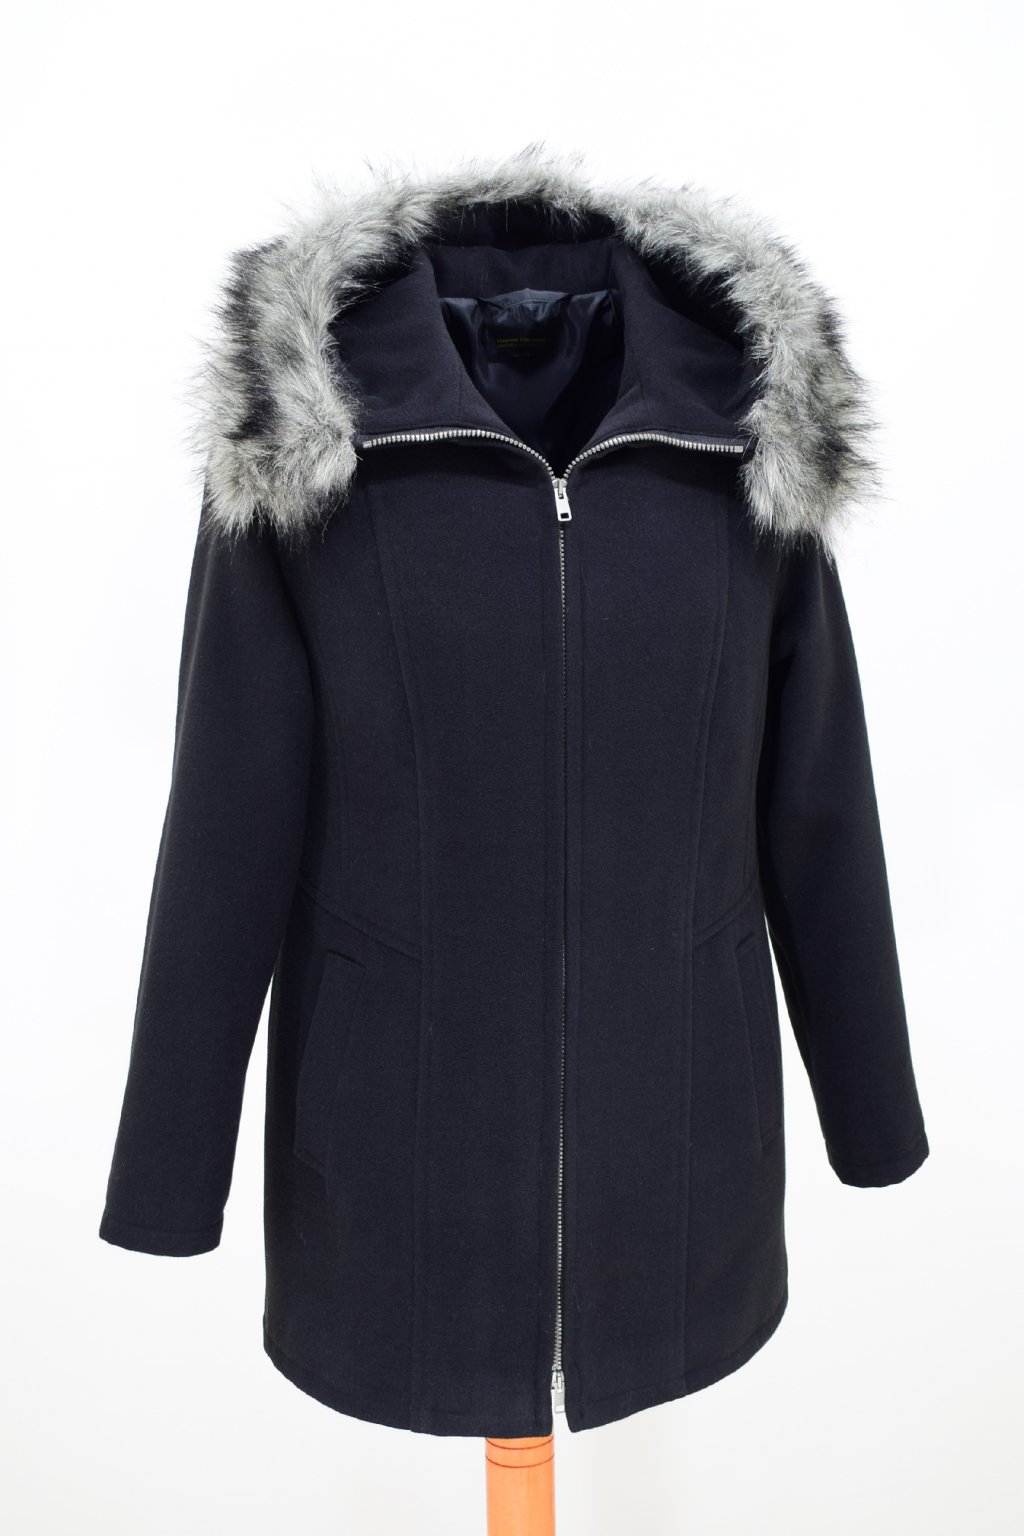 Dámský černý zimní kabátek Žaneta nadměrné velikosti.